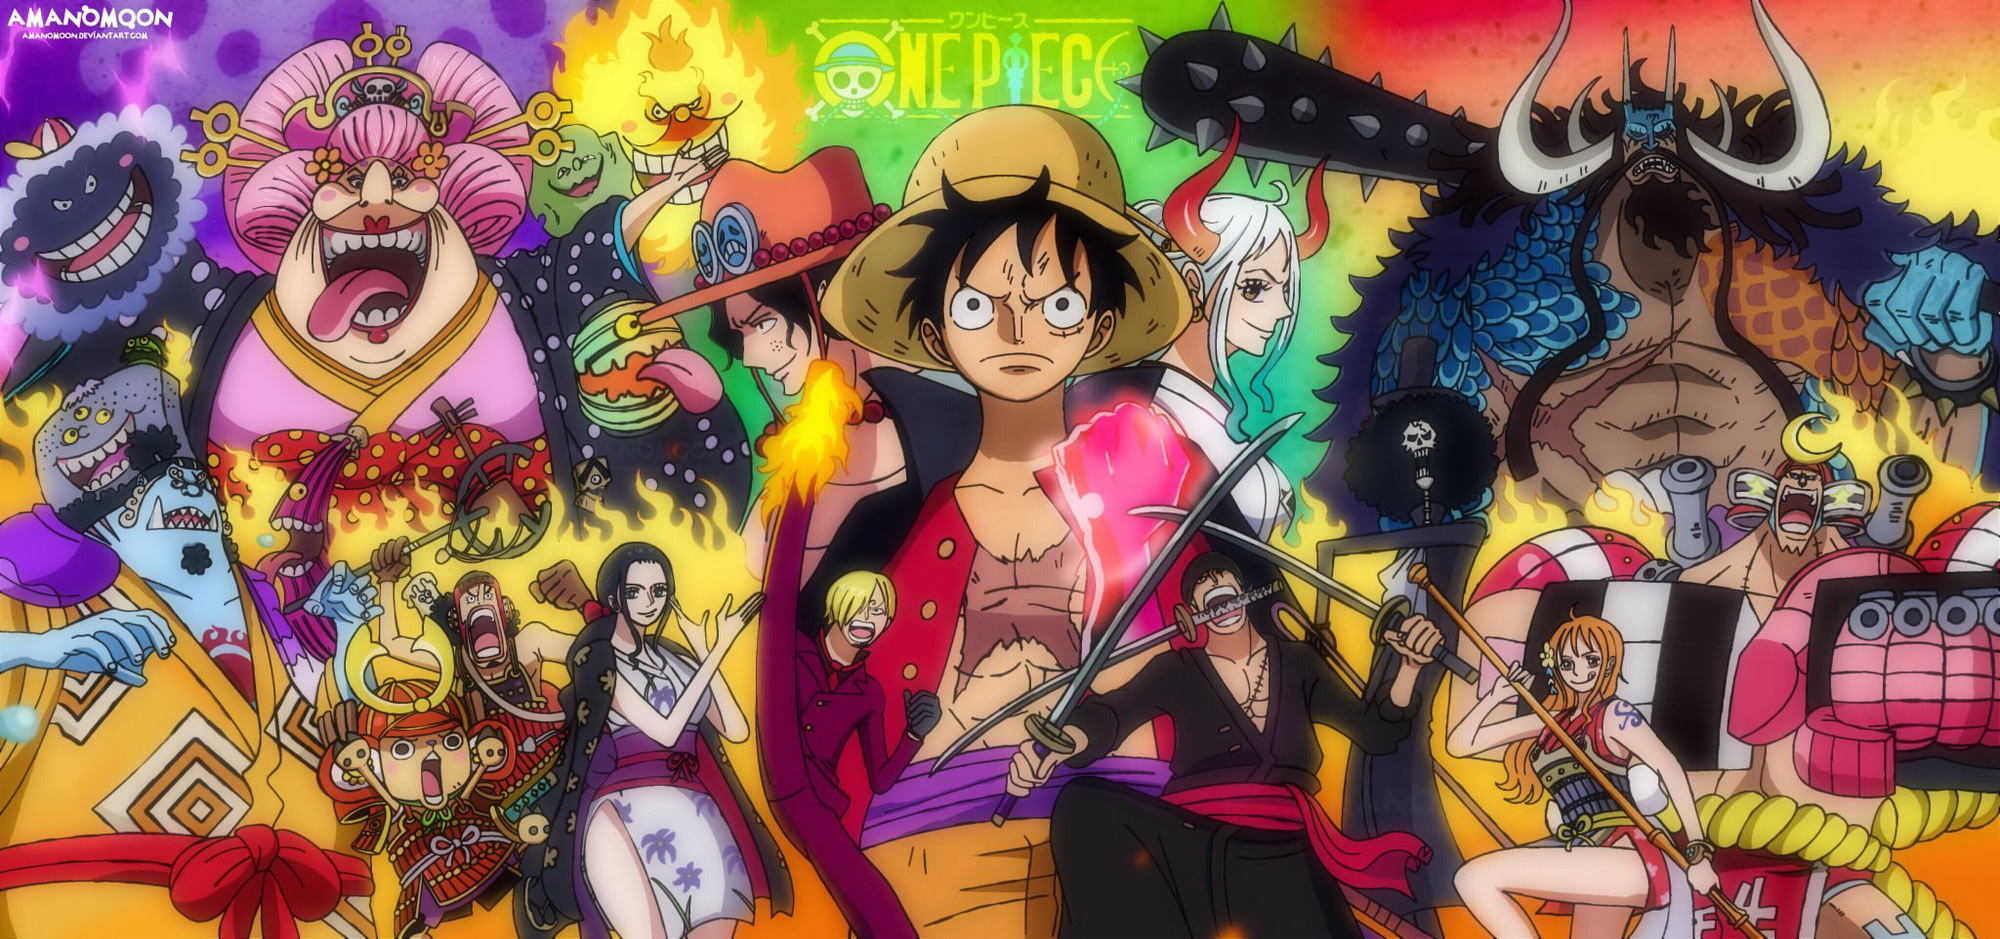 Nếu bạn là một fan của anime, One Piece là một trong những bộ phim không thể bỏ qua. Các nhân vật đầy màu sắc, tình tiết phim hấp dẫn sẽ khiến bạn không thể rời mắt khỏi màn hình. Xem hình liên quan để khám phá thêm về thế giới đầy phiêu lưu của One Piece.